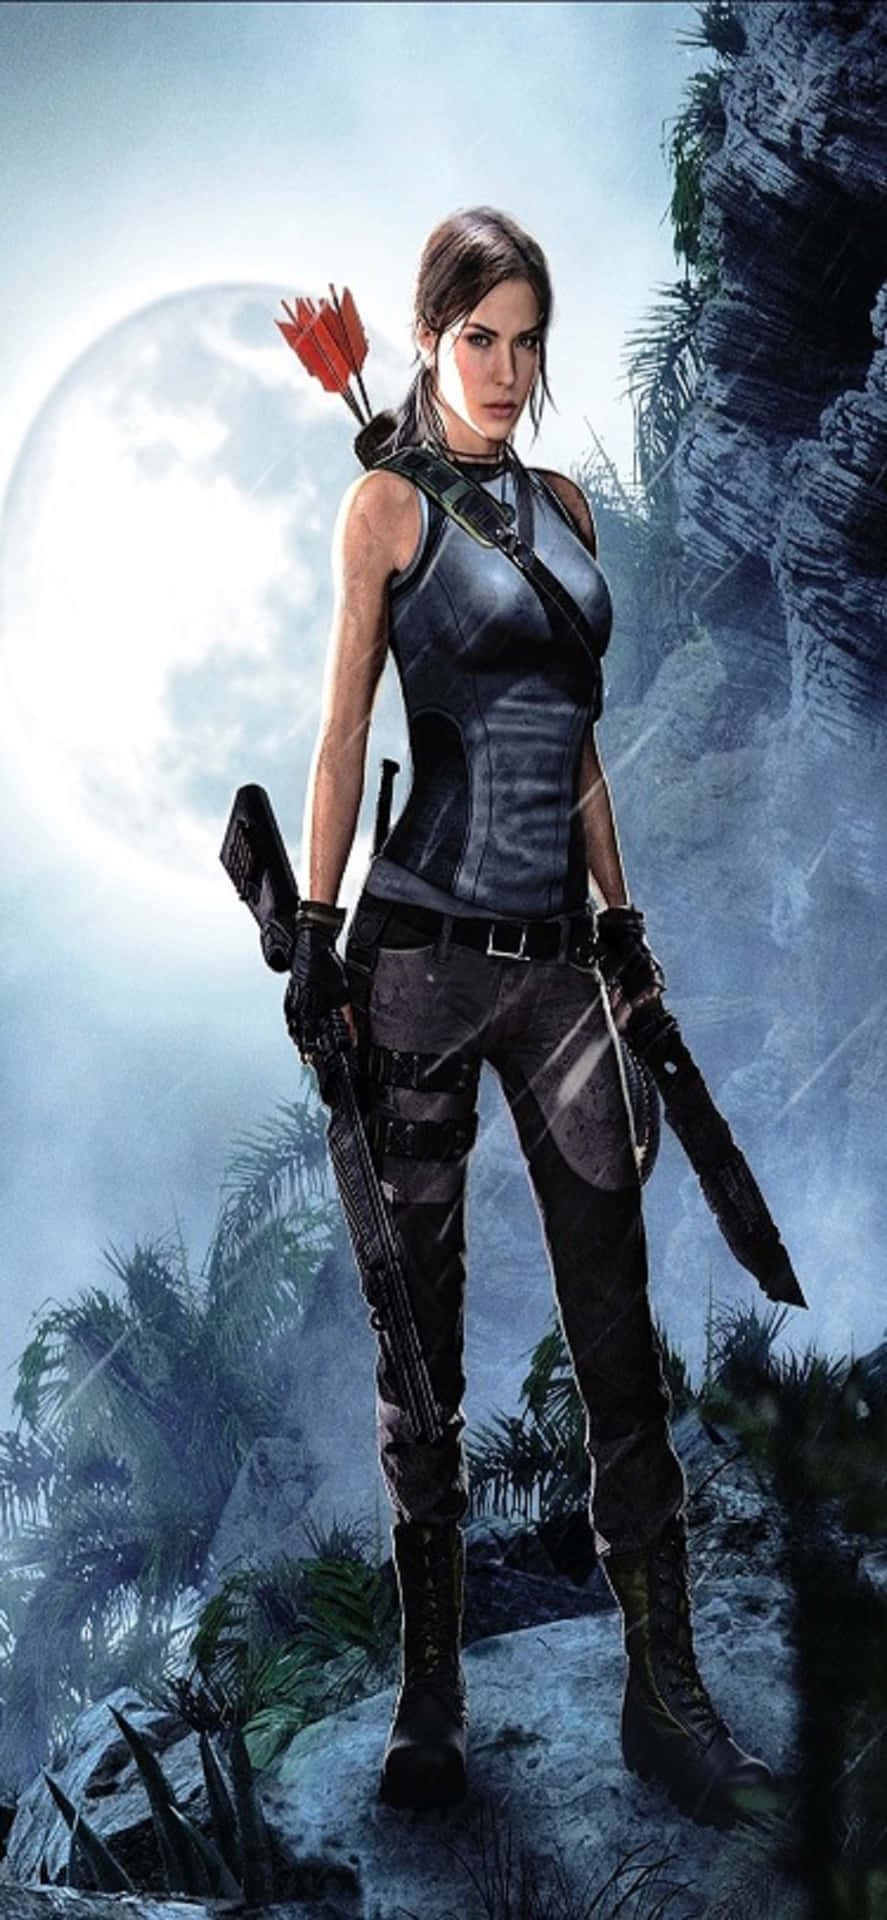 Låsupp Hemligheter Och Utforska Lara Crofts Senaste Äventyr På Iphone X Shadow Of The Tomb Raider Med En Ny Bakgrundsbild.